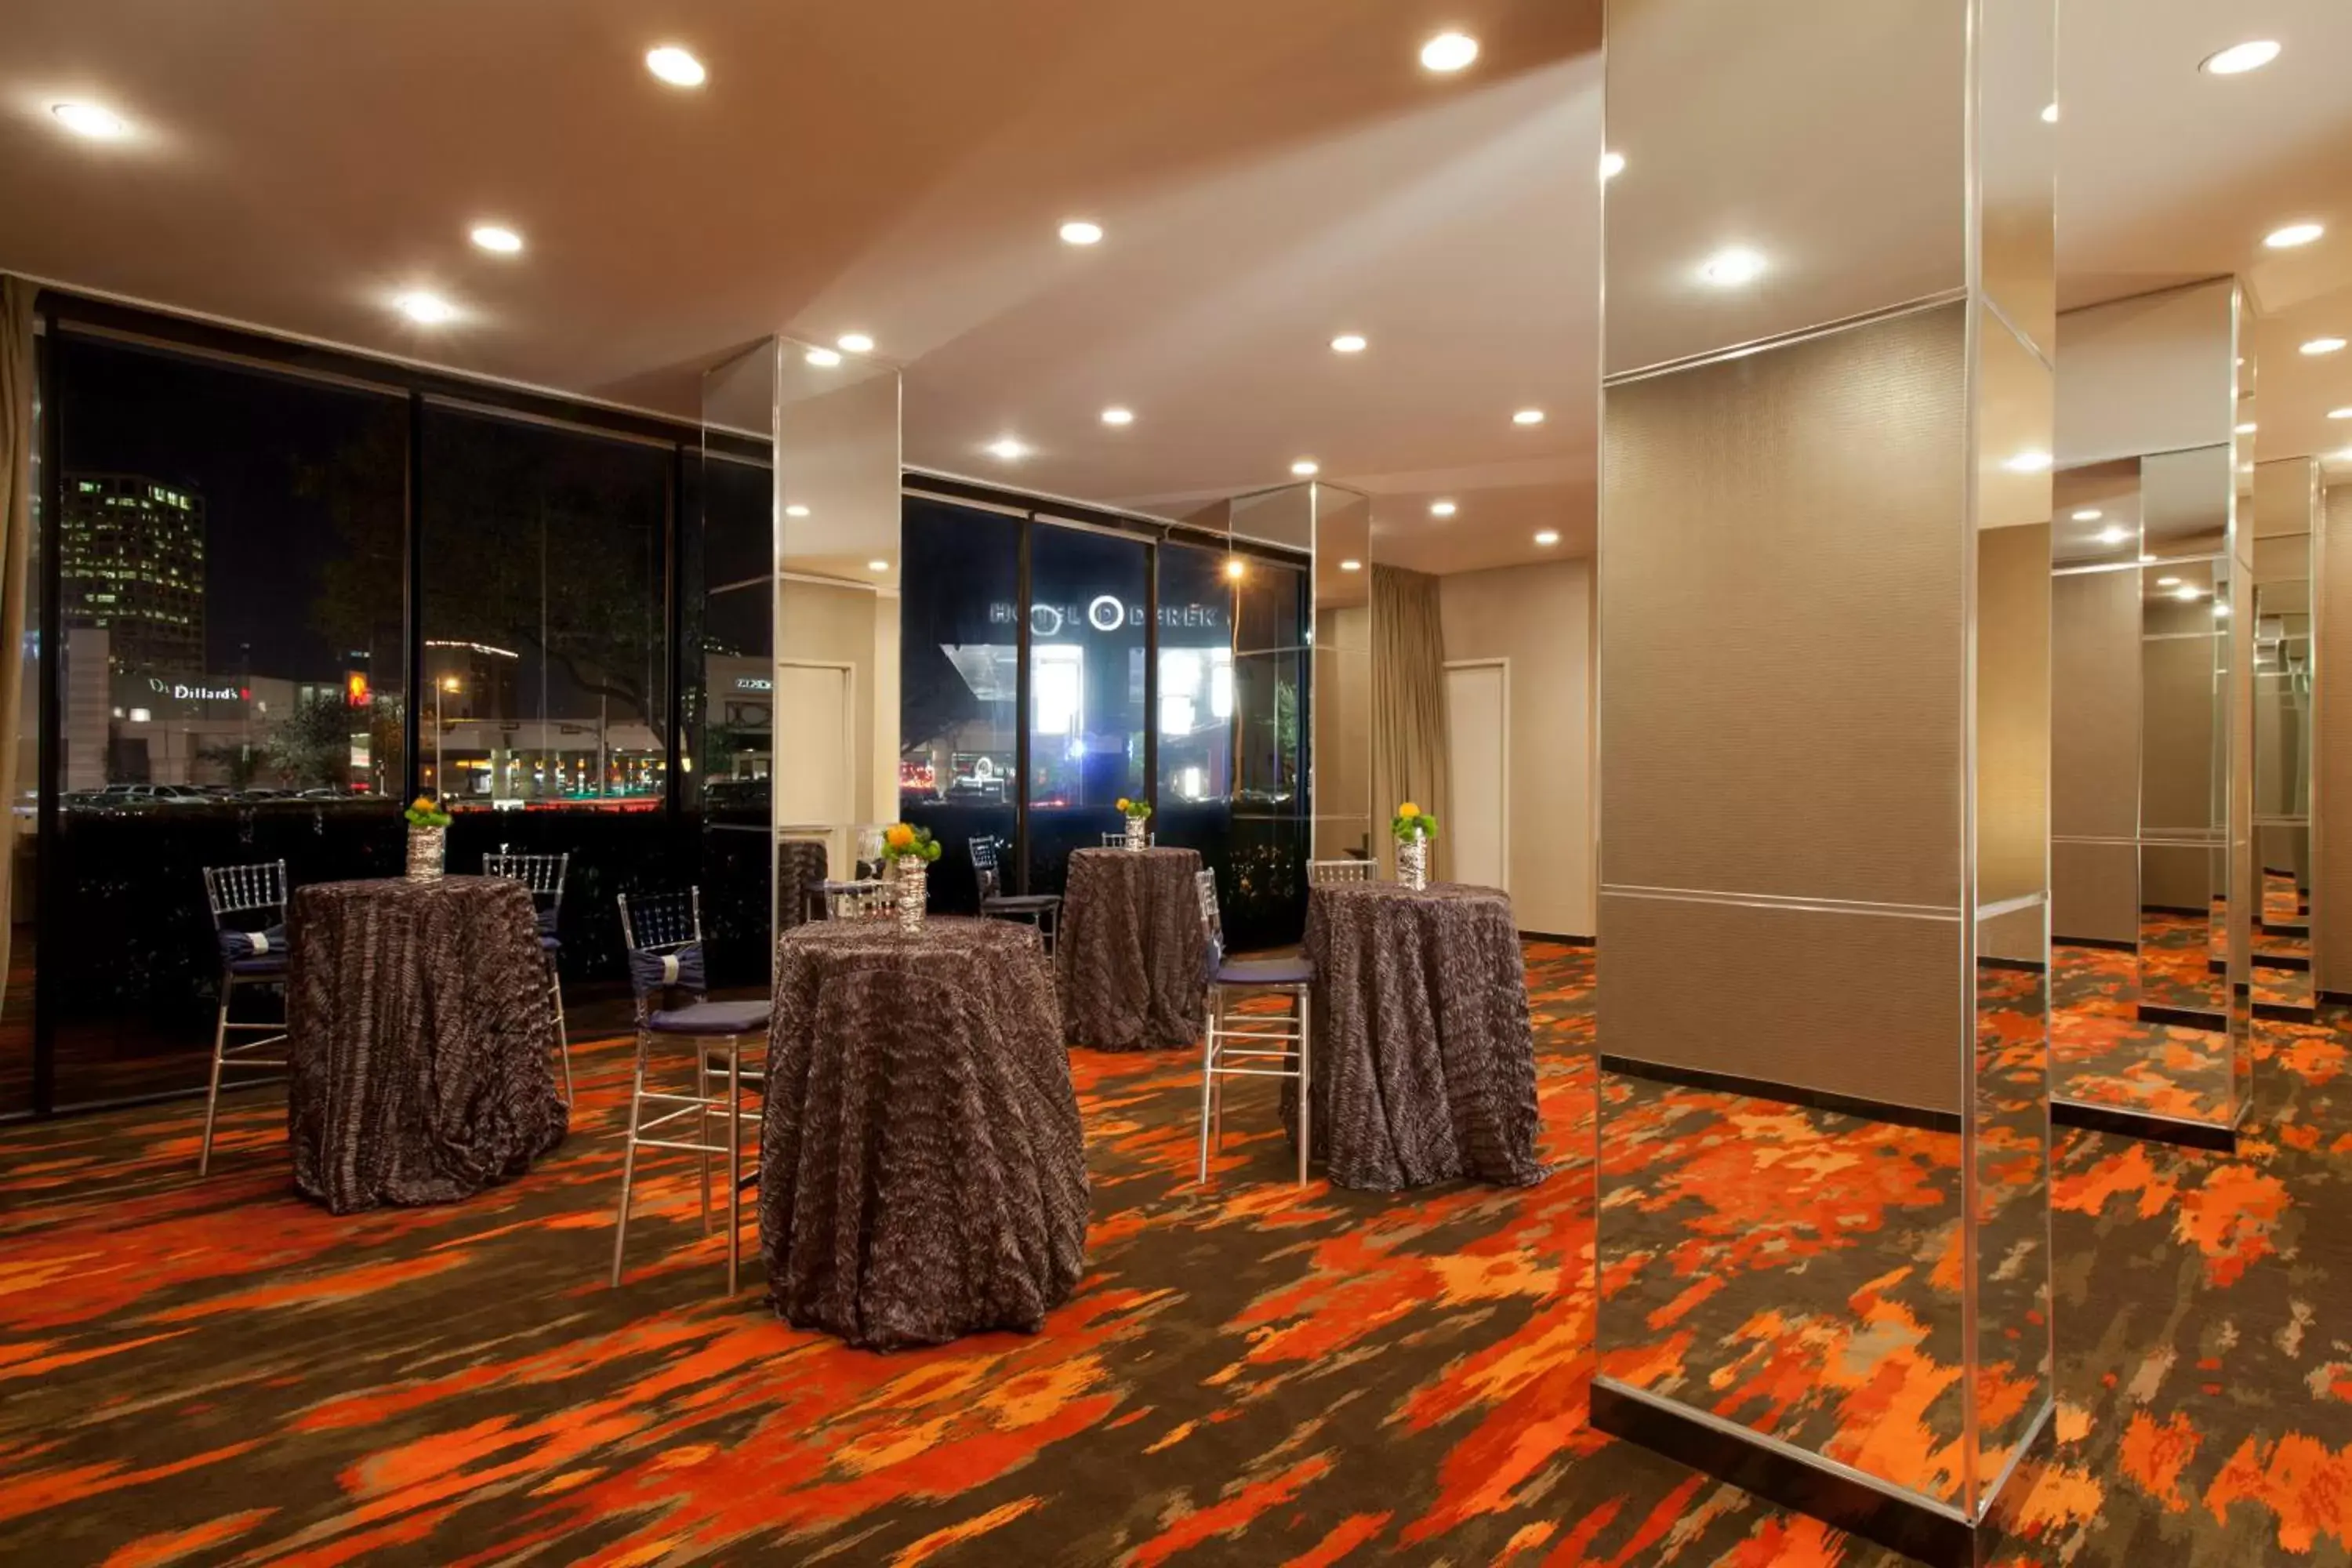 Banquet/Function facilities in Hotel Derek Houston Galleria